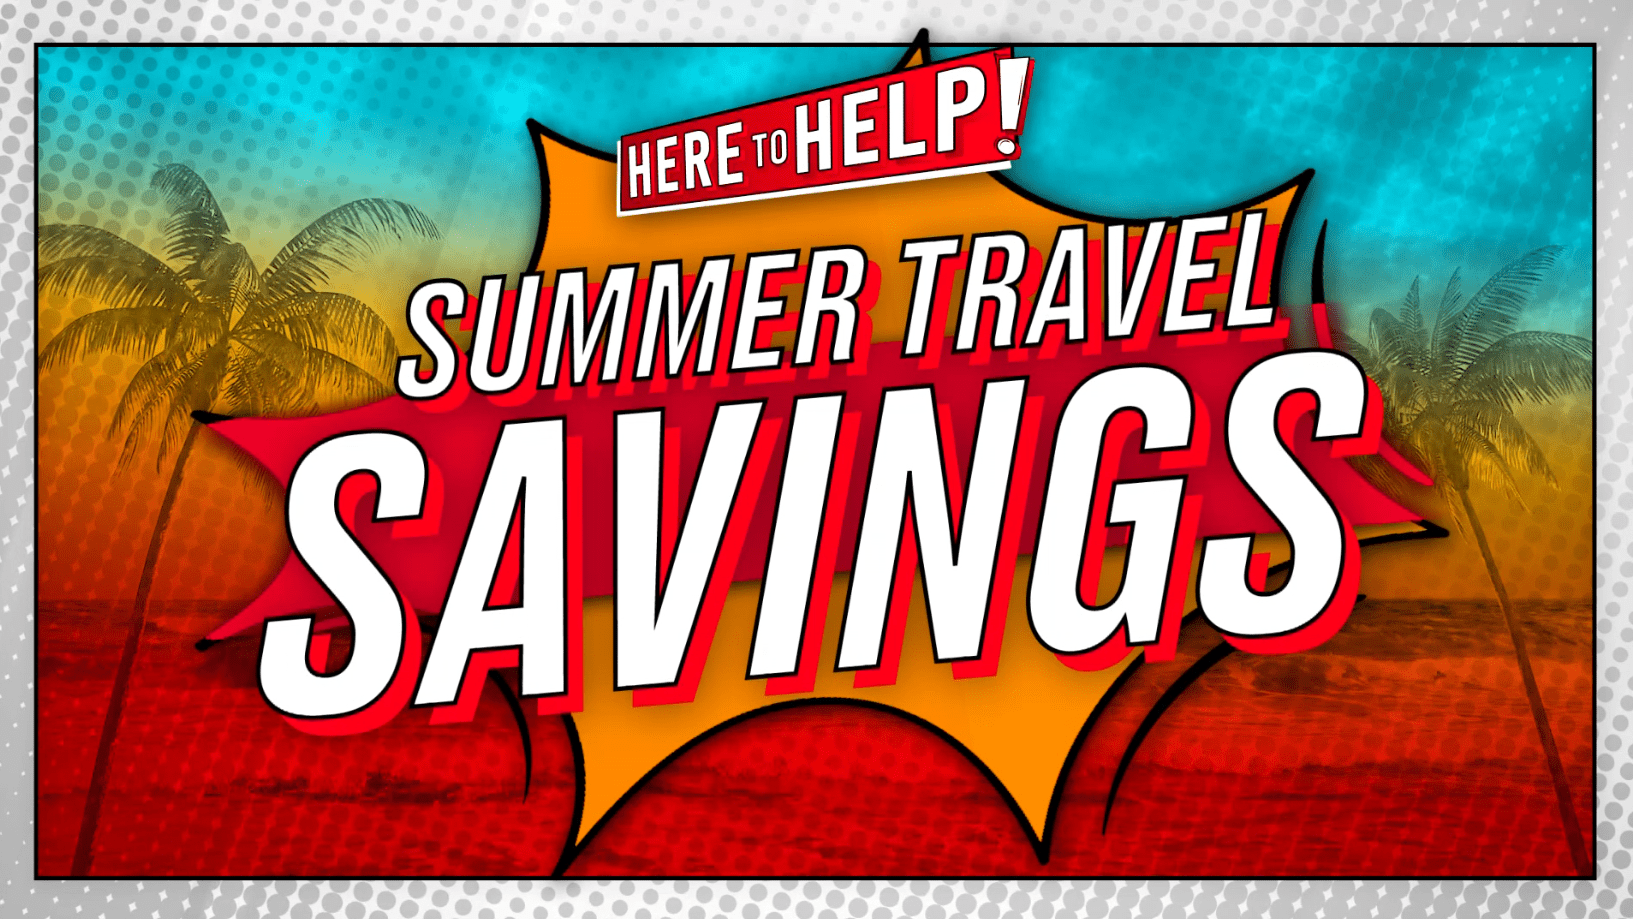 Diane Lee's Here to Help: Summer Travel Savings